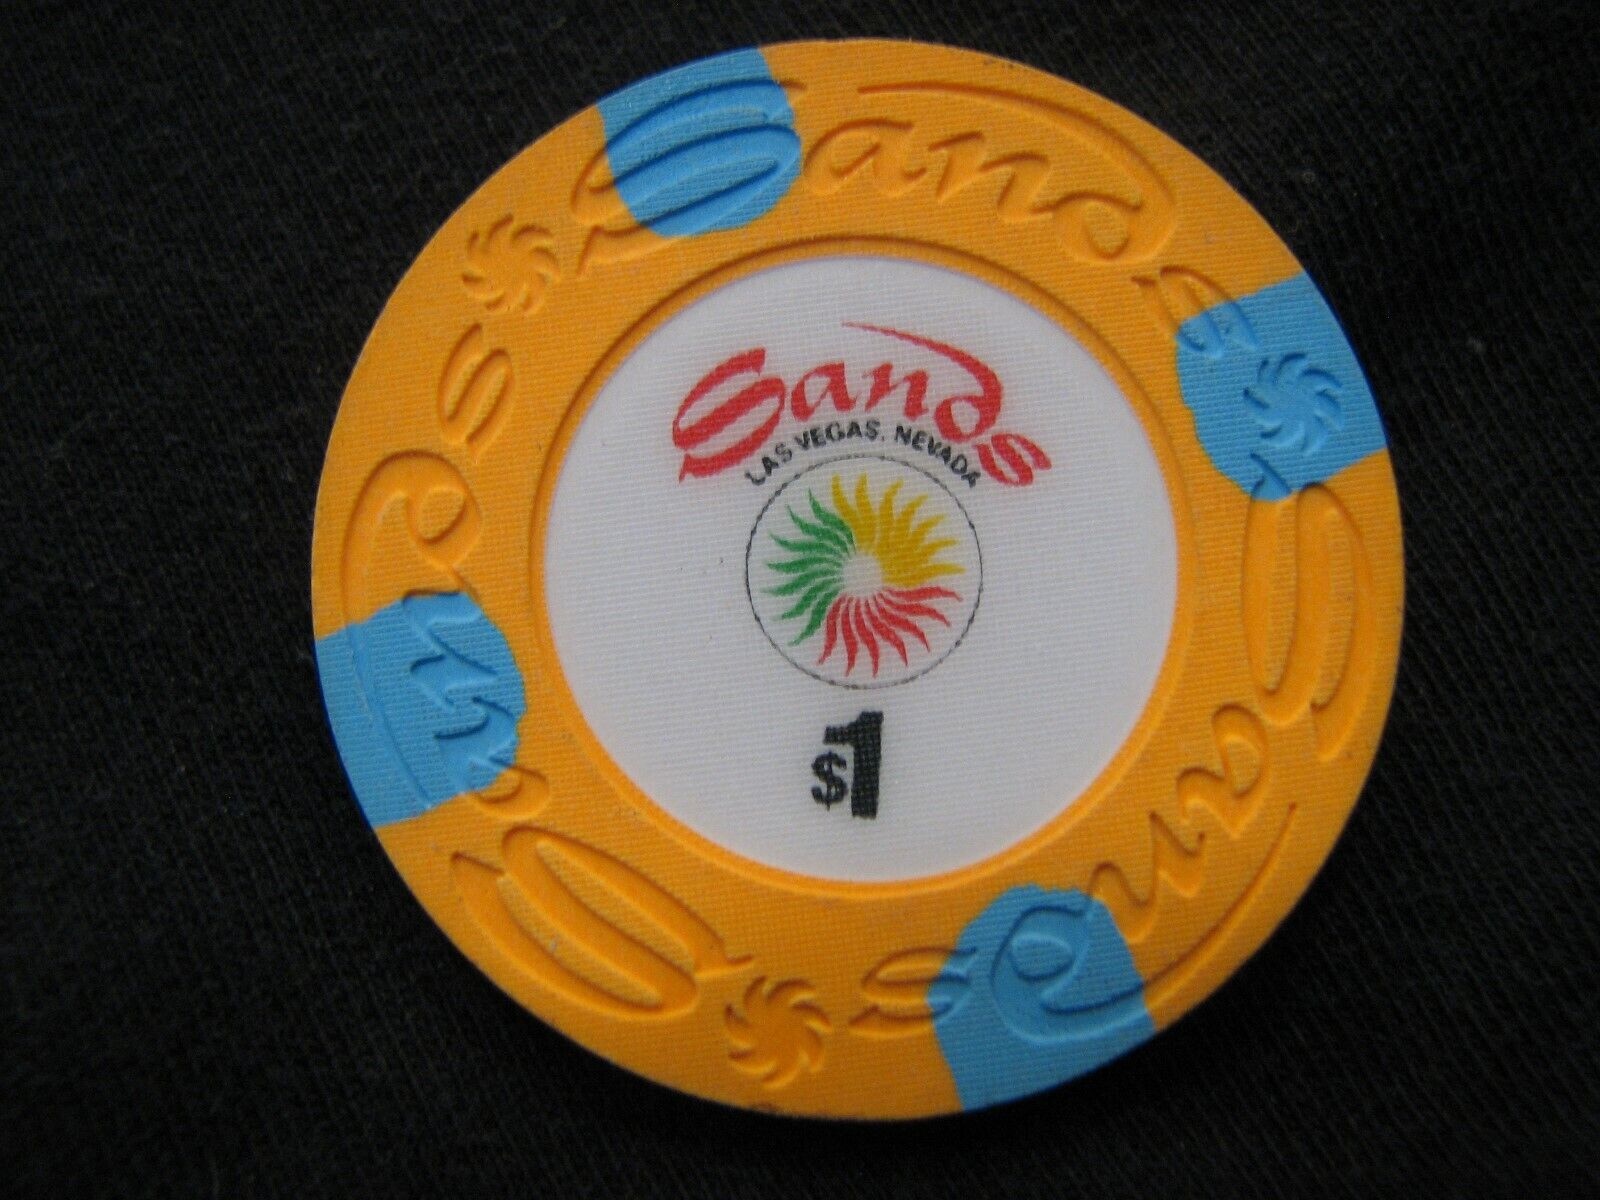 $1 Las Vegas Sands Casino Chip - Orange - Very Nice